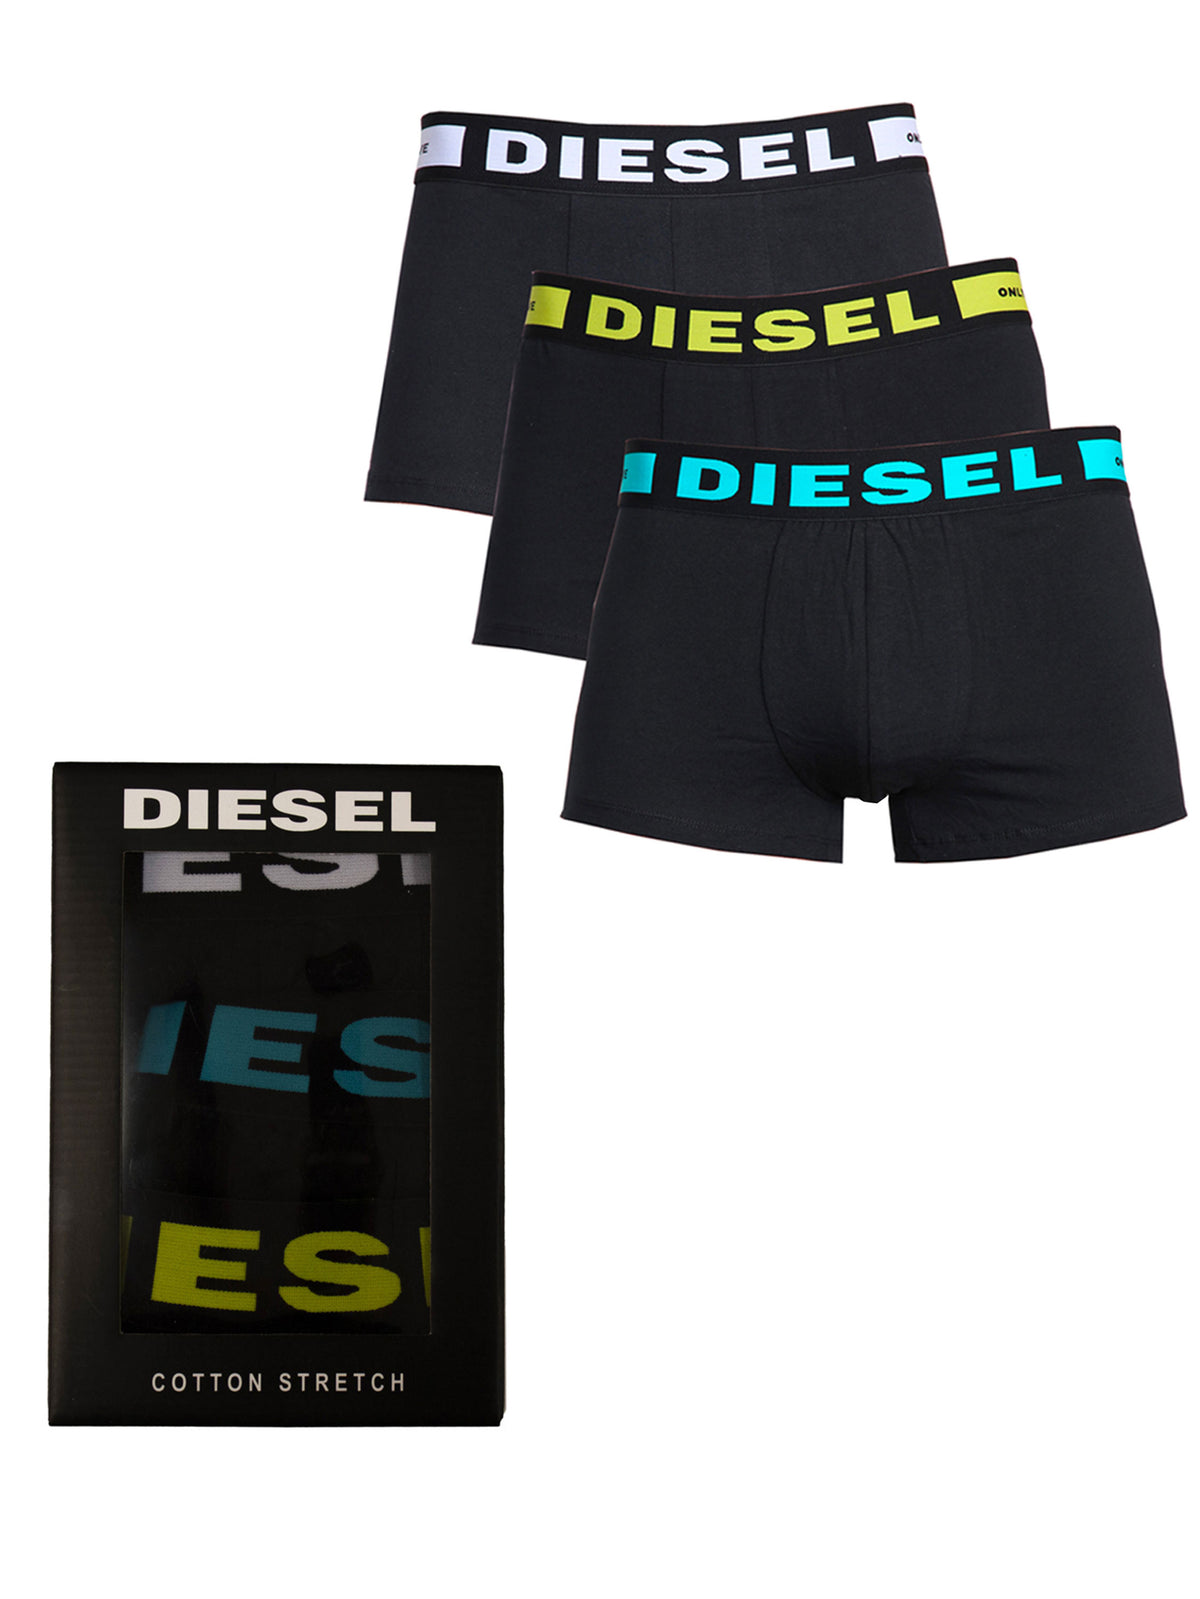 DIESEL_BXRS ALL-3PK Diesel | Mens Black Boxers (3 Pack) DIESEL RAWDENIM